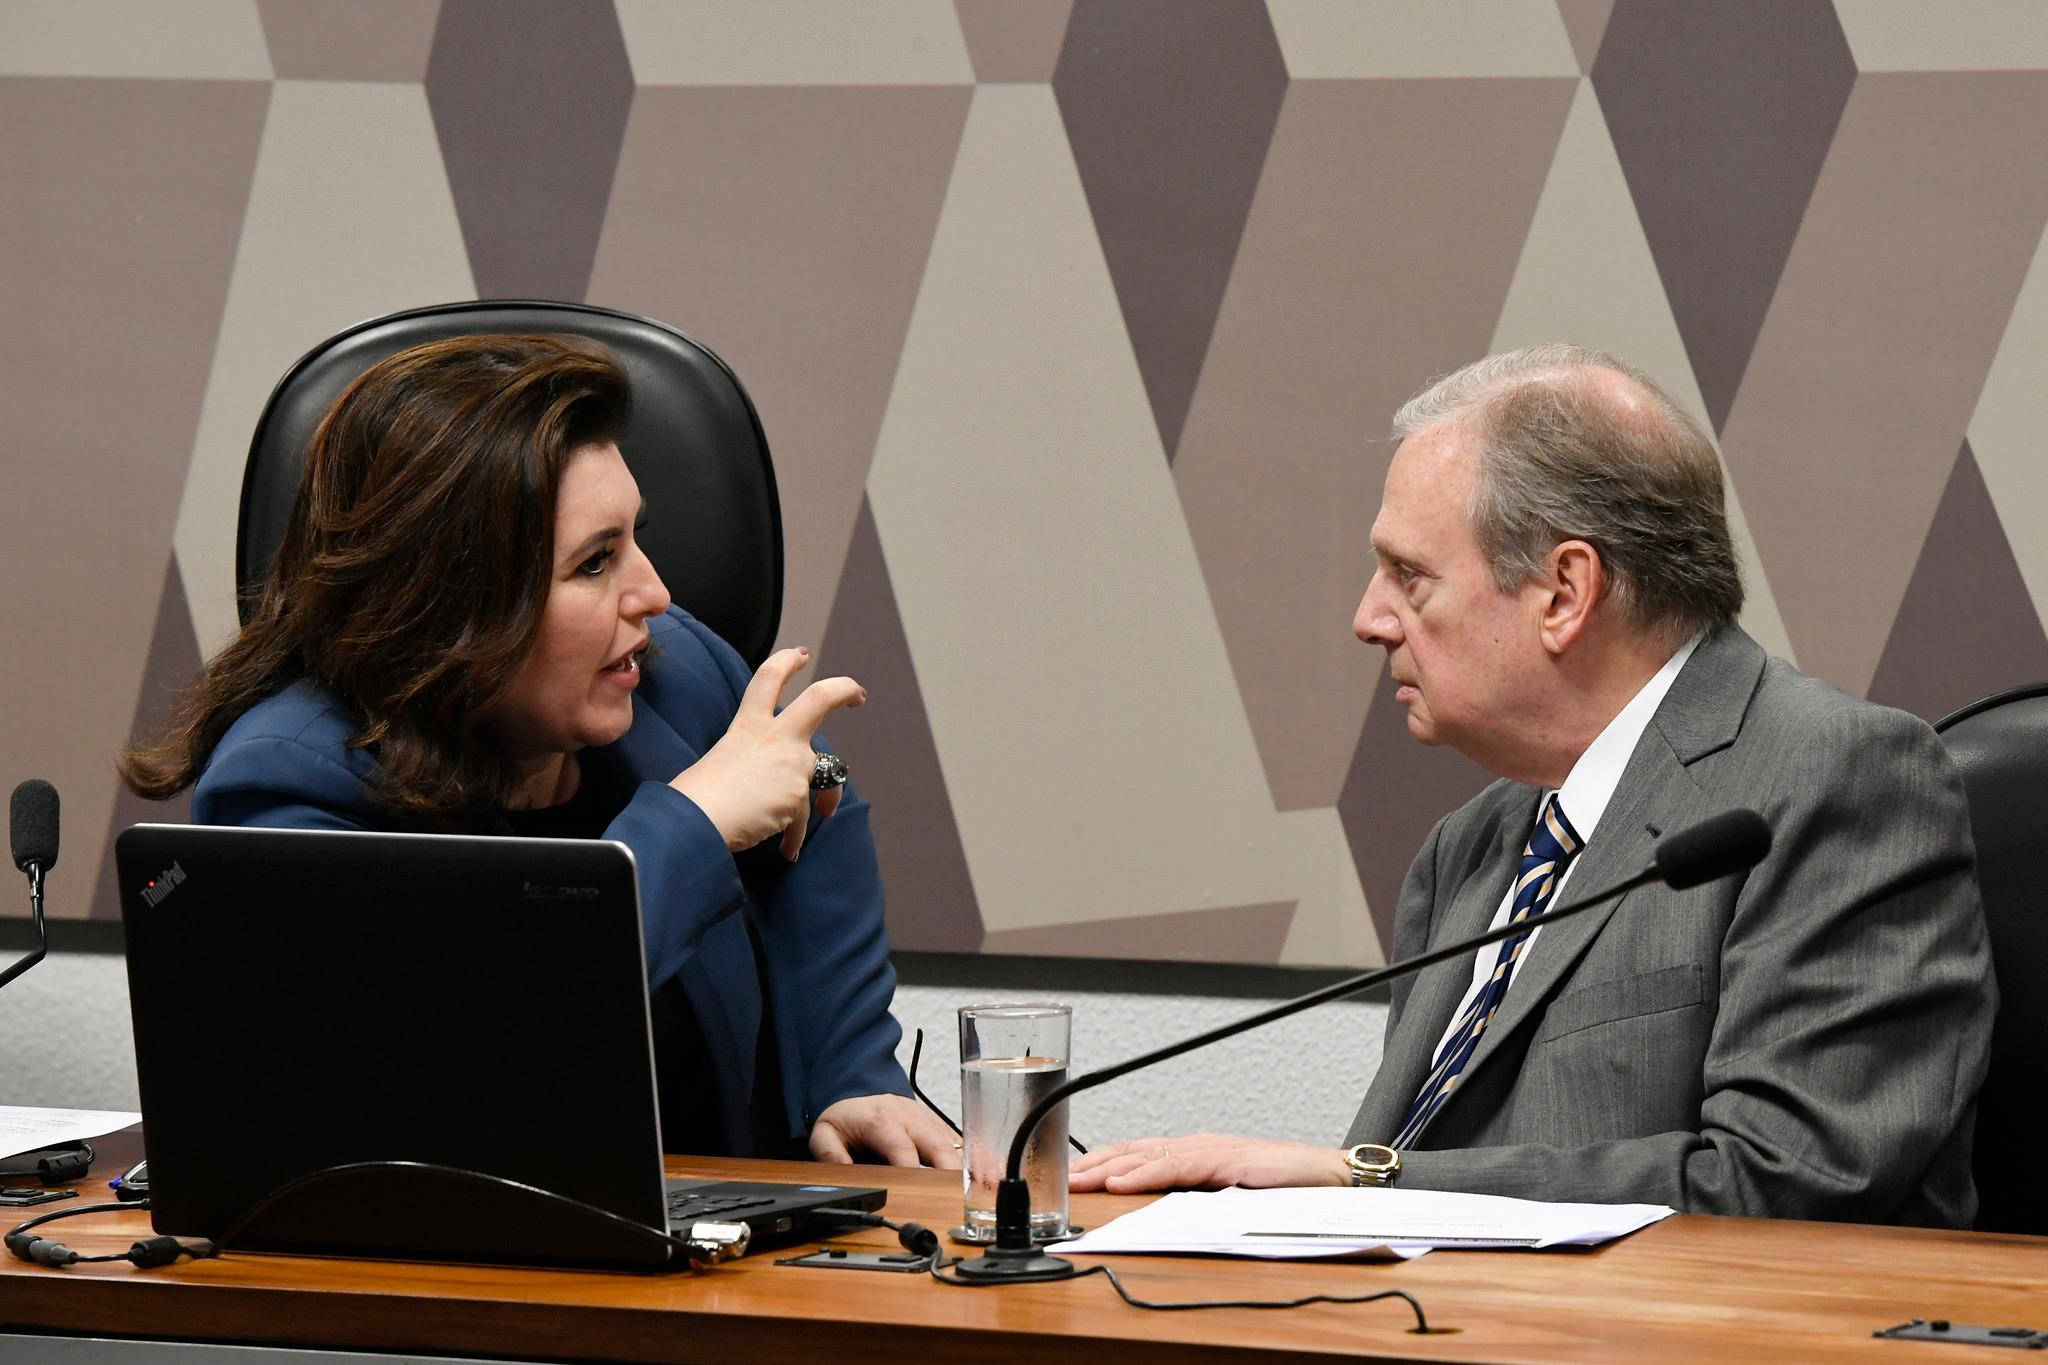 A senadora Simone Tebet gesticula enquanto conversa com o senador Tasso Jereissati.